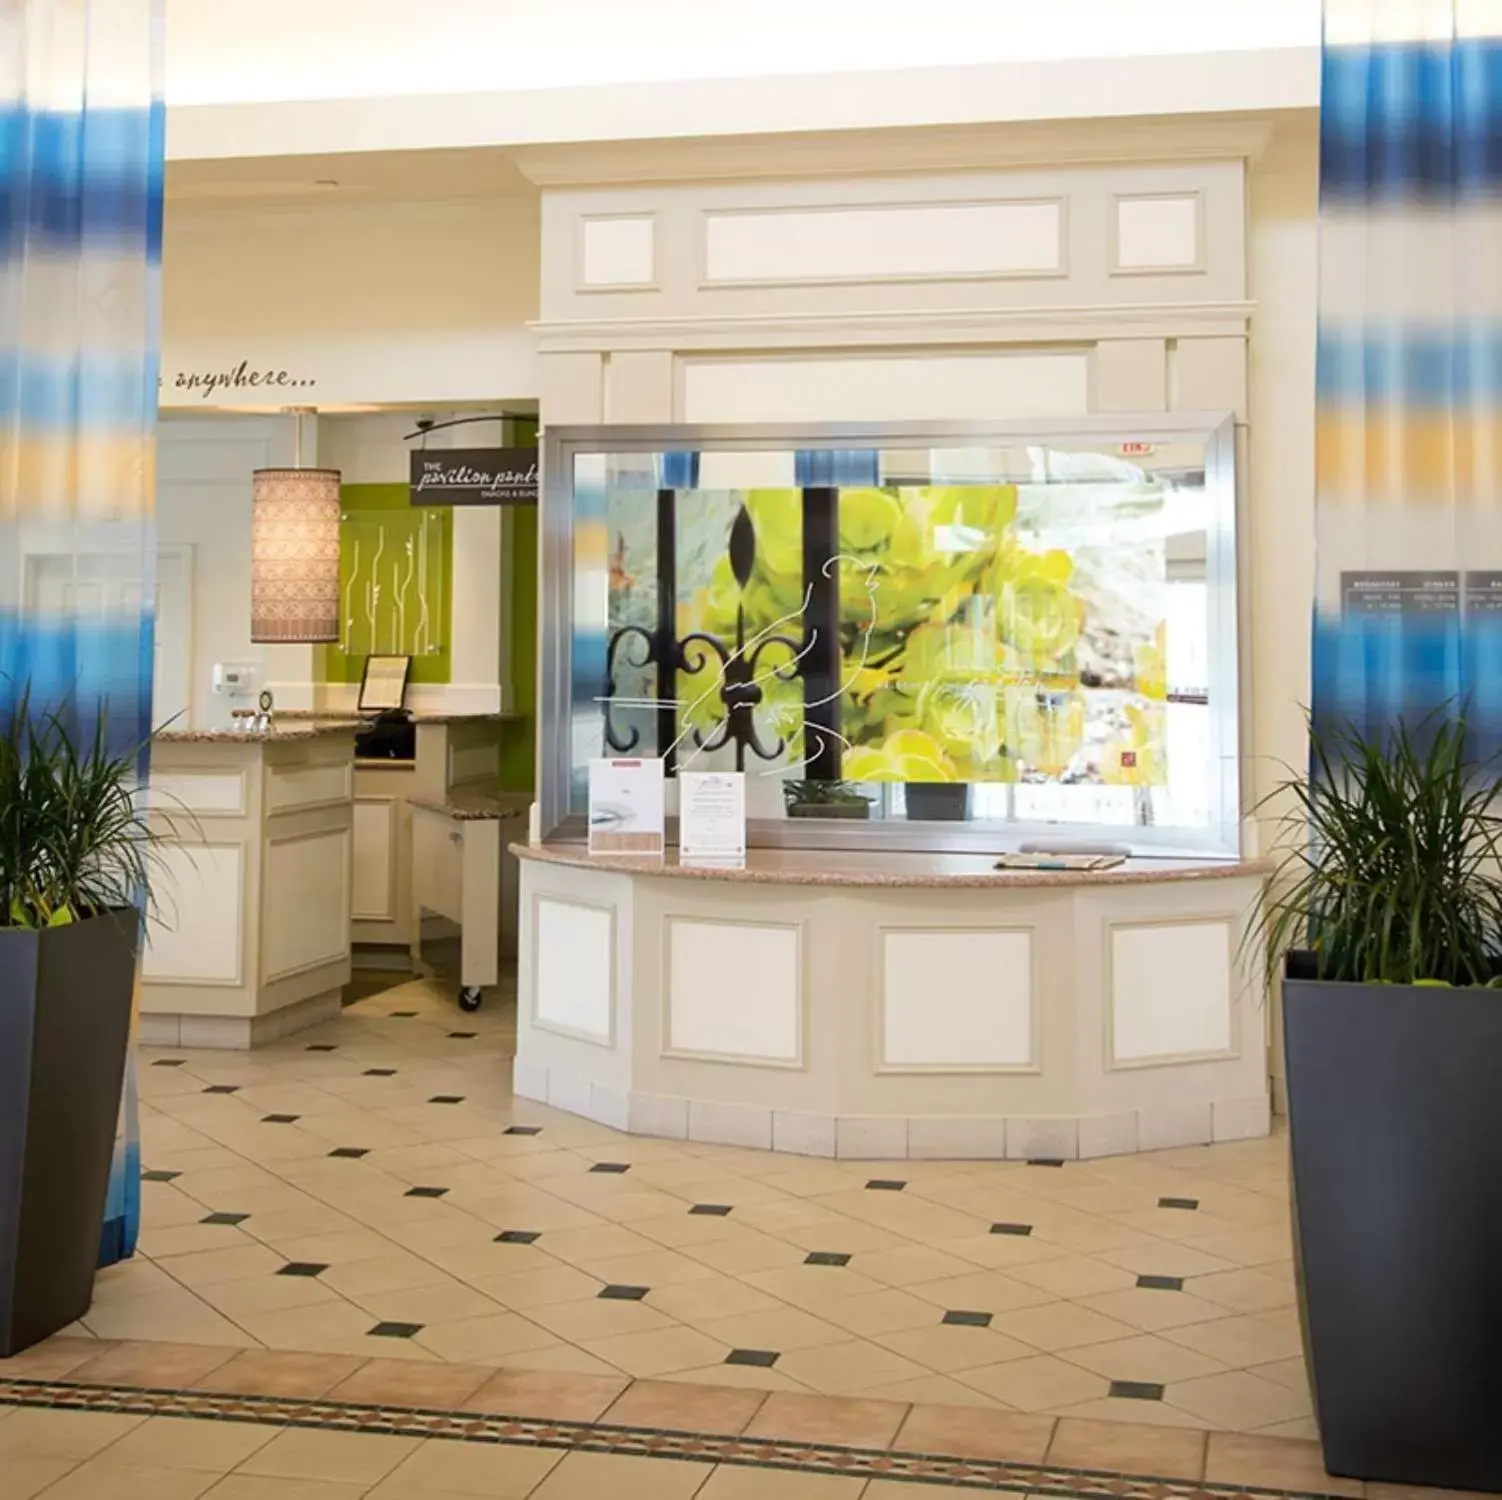 Lobby or reception, Lobby/Reception in Hilton Garden Inn Gettysburg